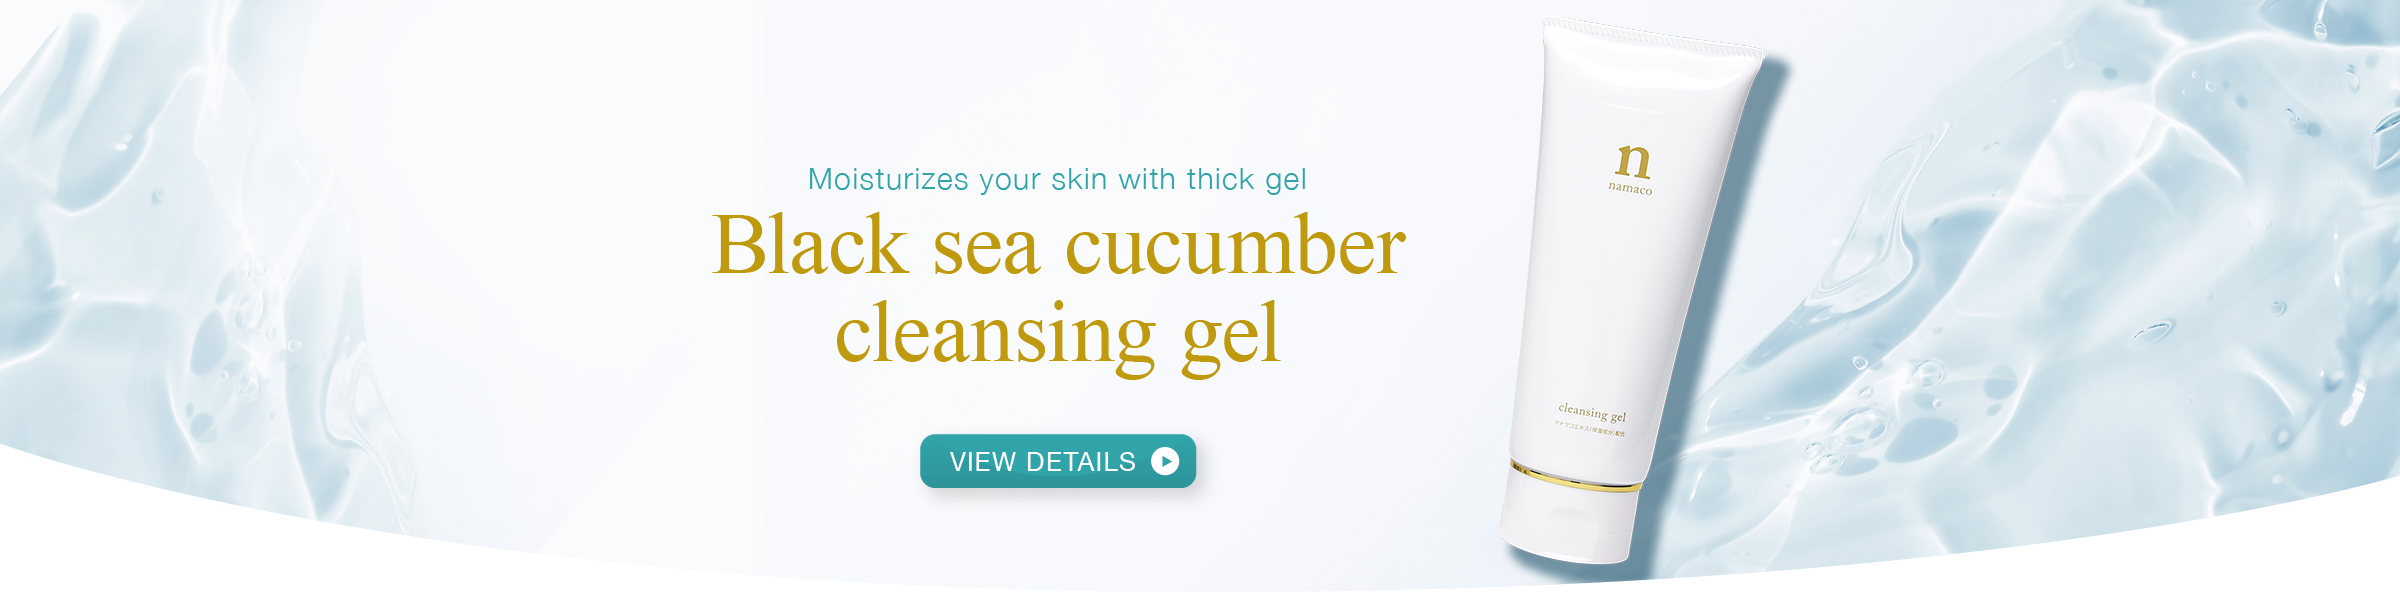 Black sea cucumber cleansing gel